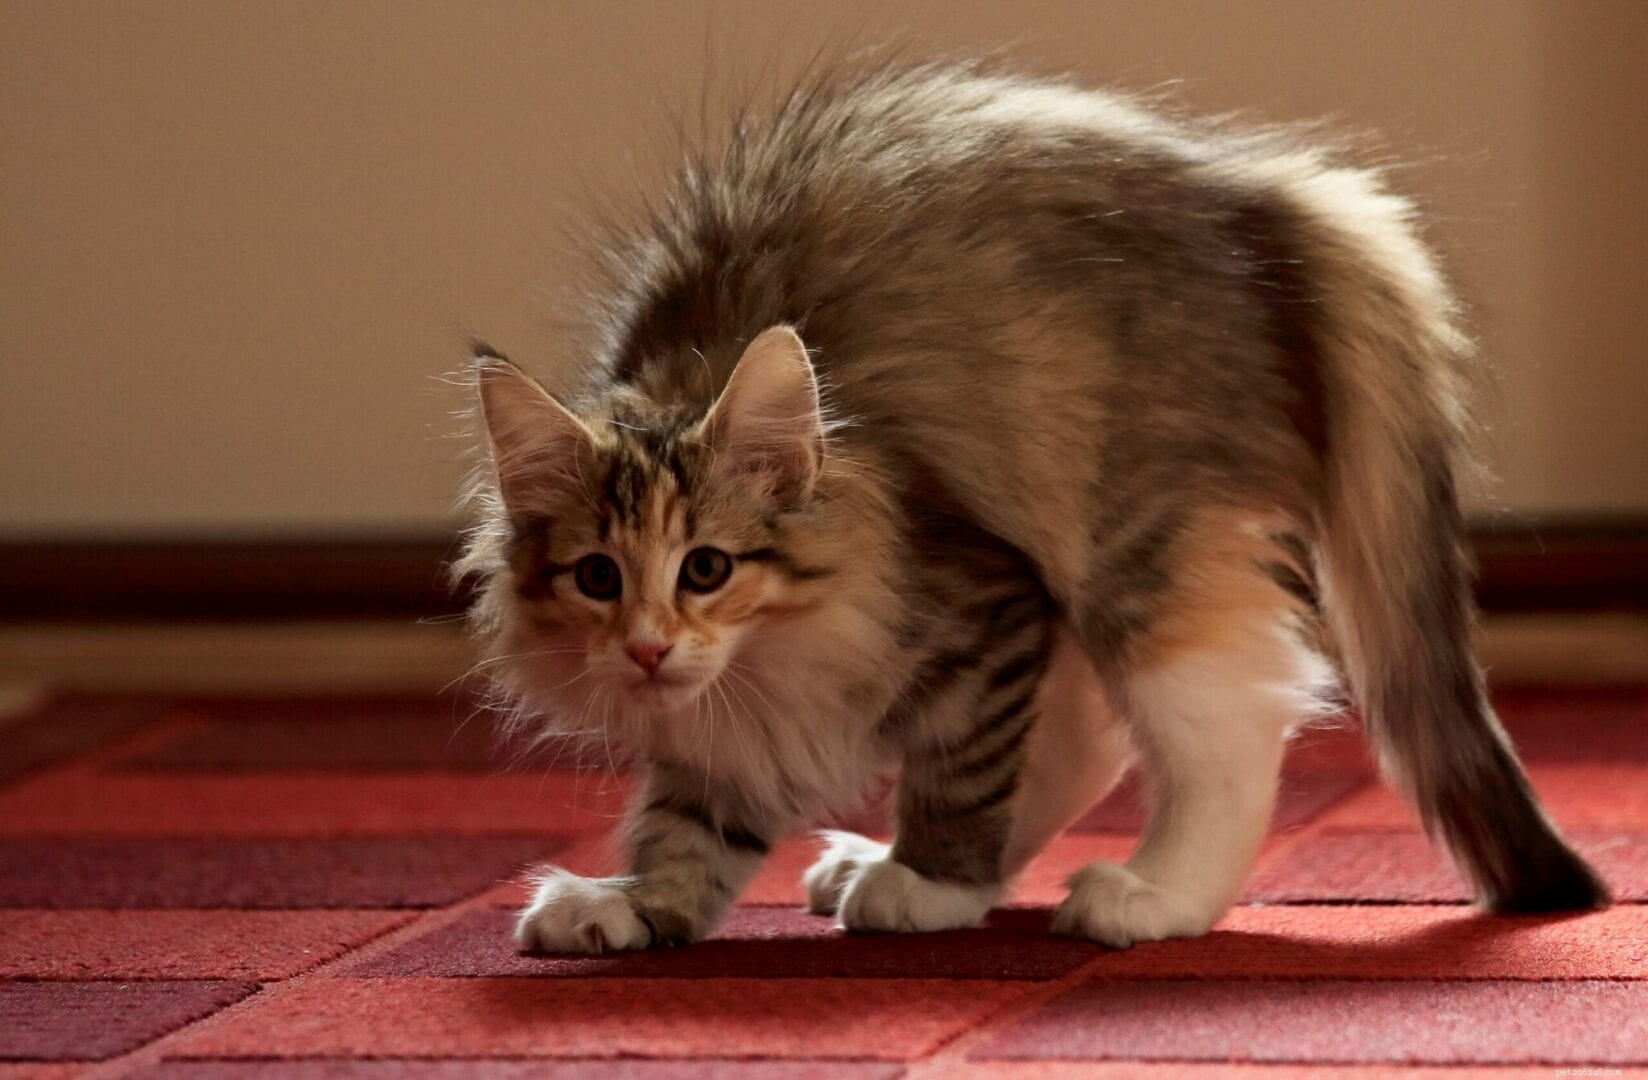 Perché i gatti camminano così stupidamente di lato?